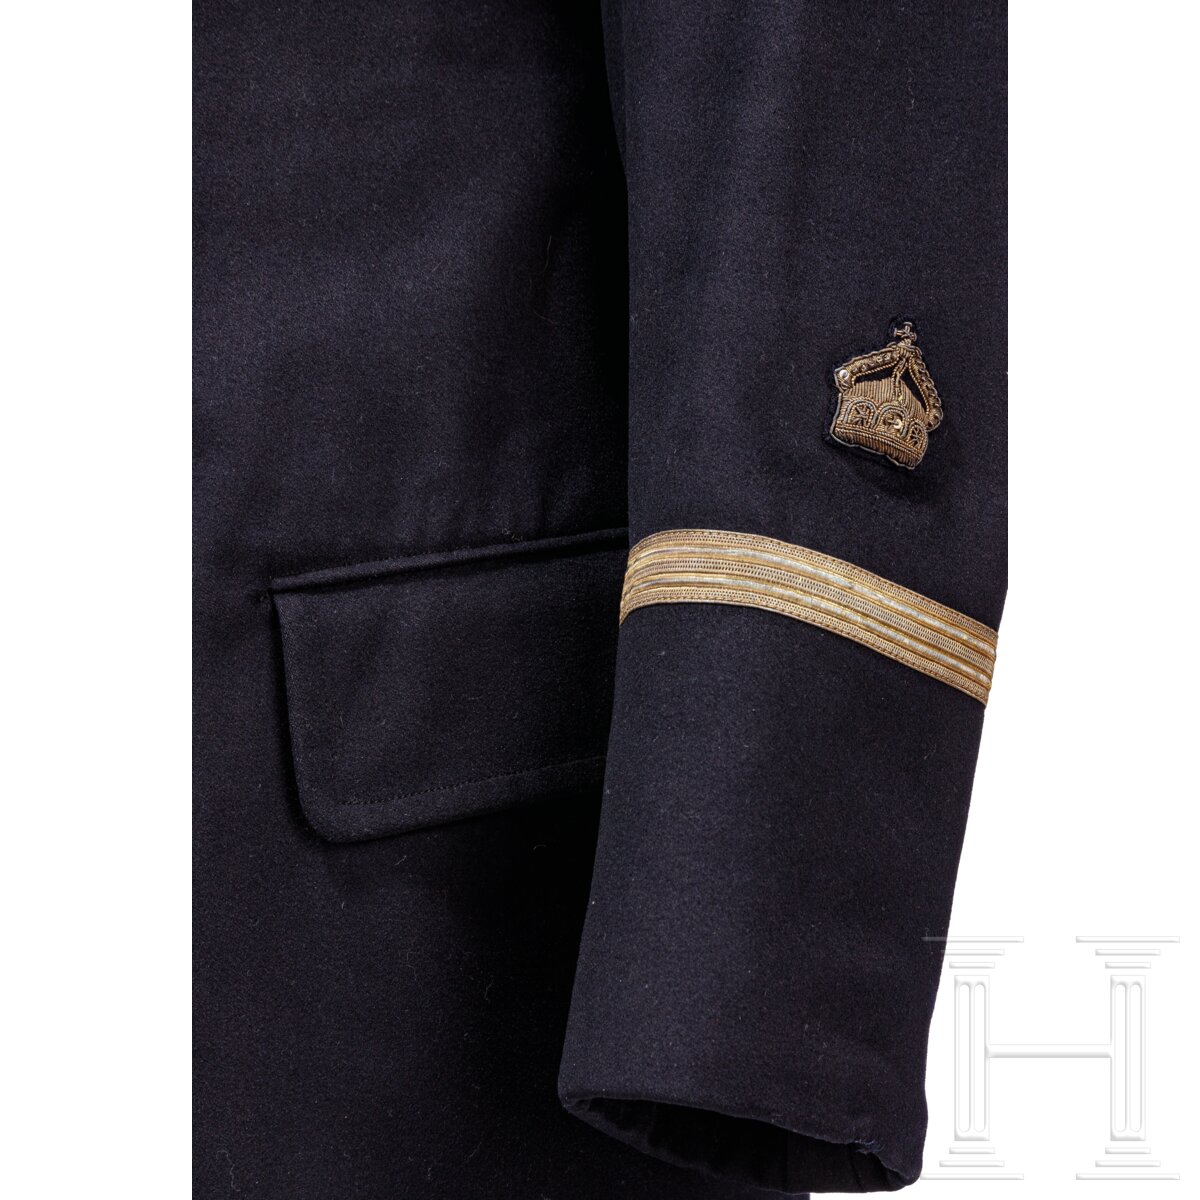 Uniformensemble für einen Leutnant der Kaiserlichen Marine - Image 4 of 10